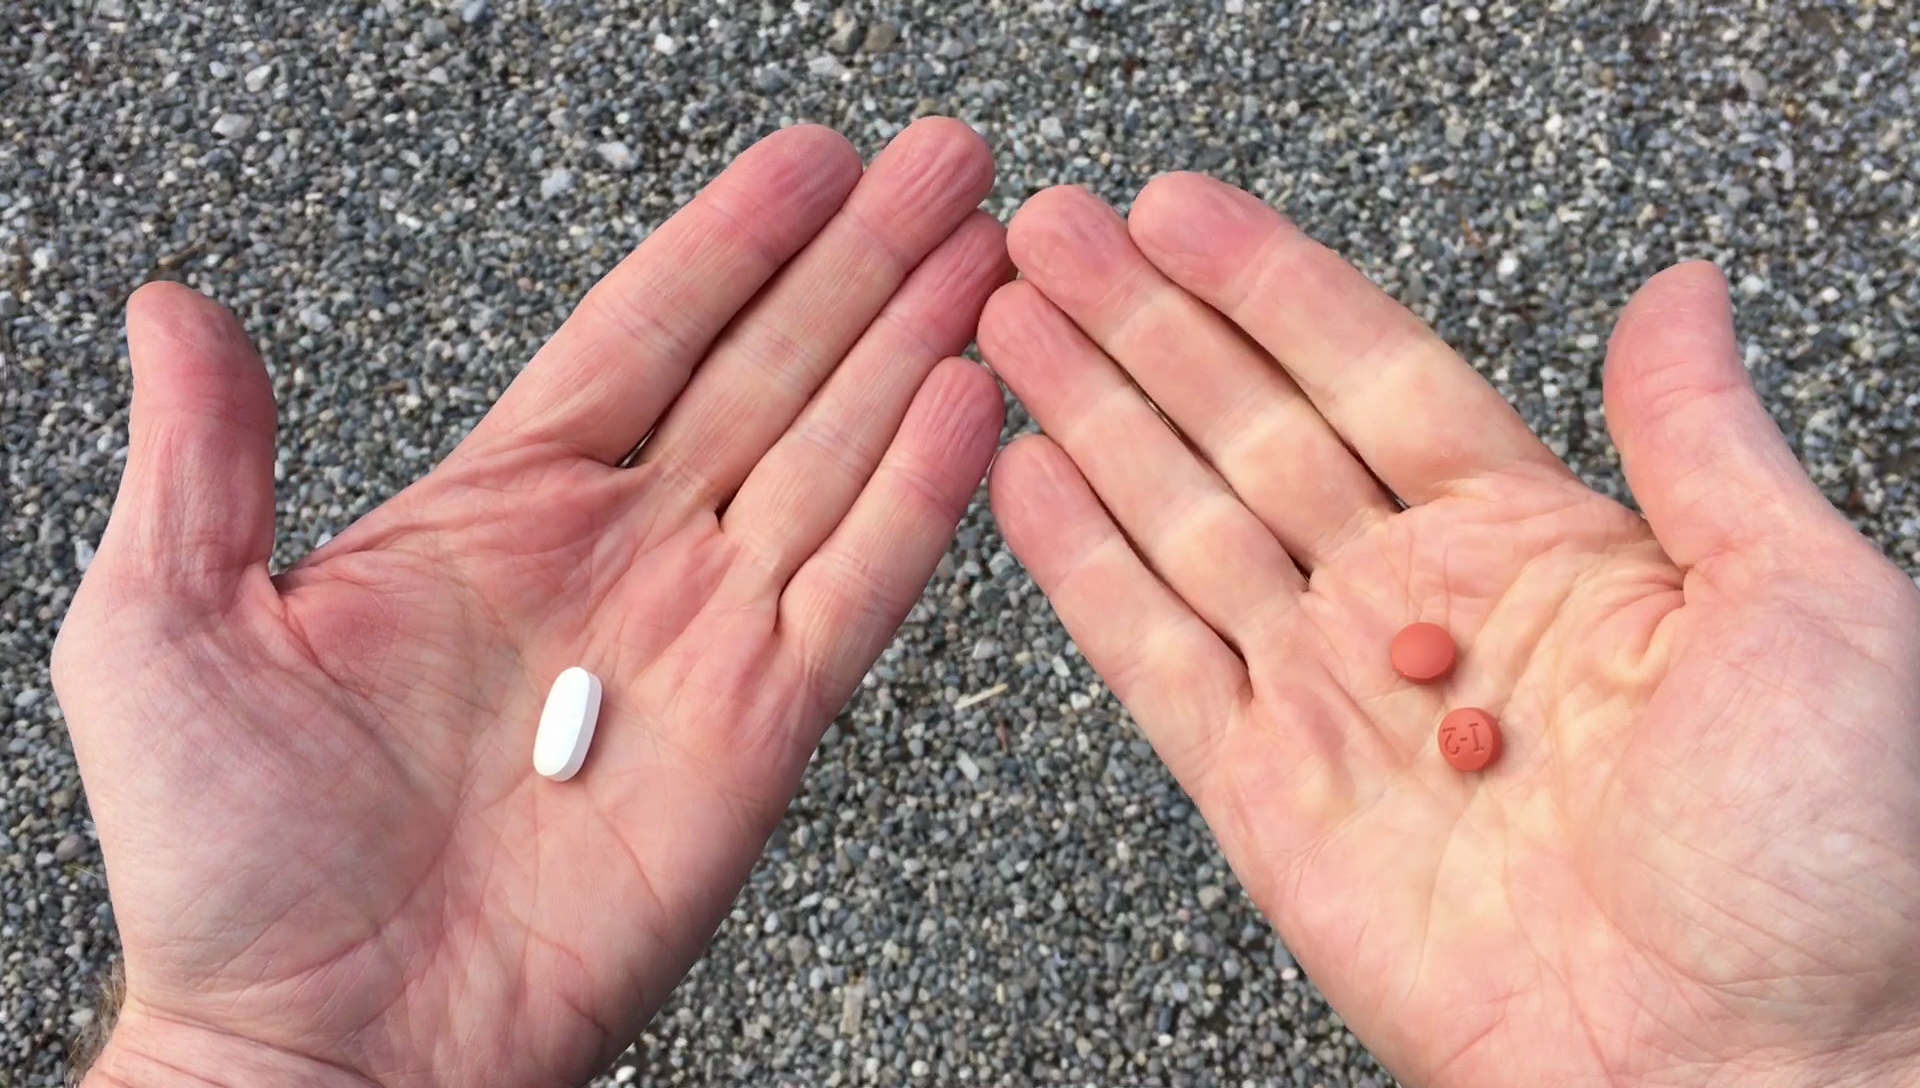 Hands holding pills